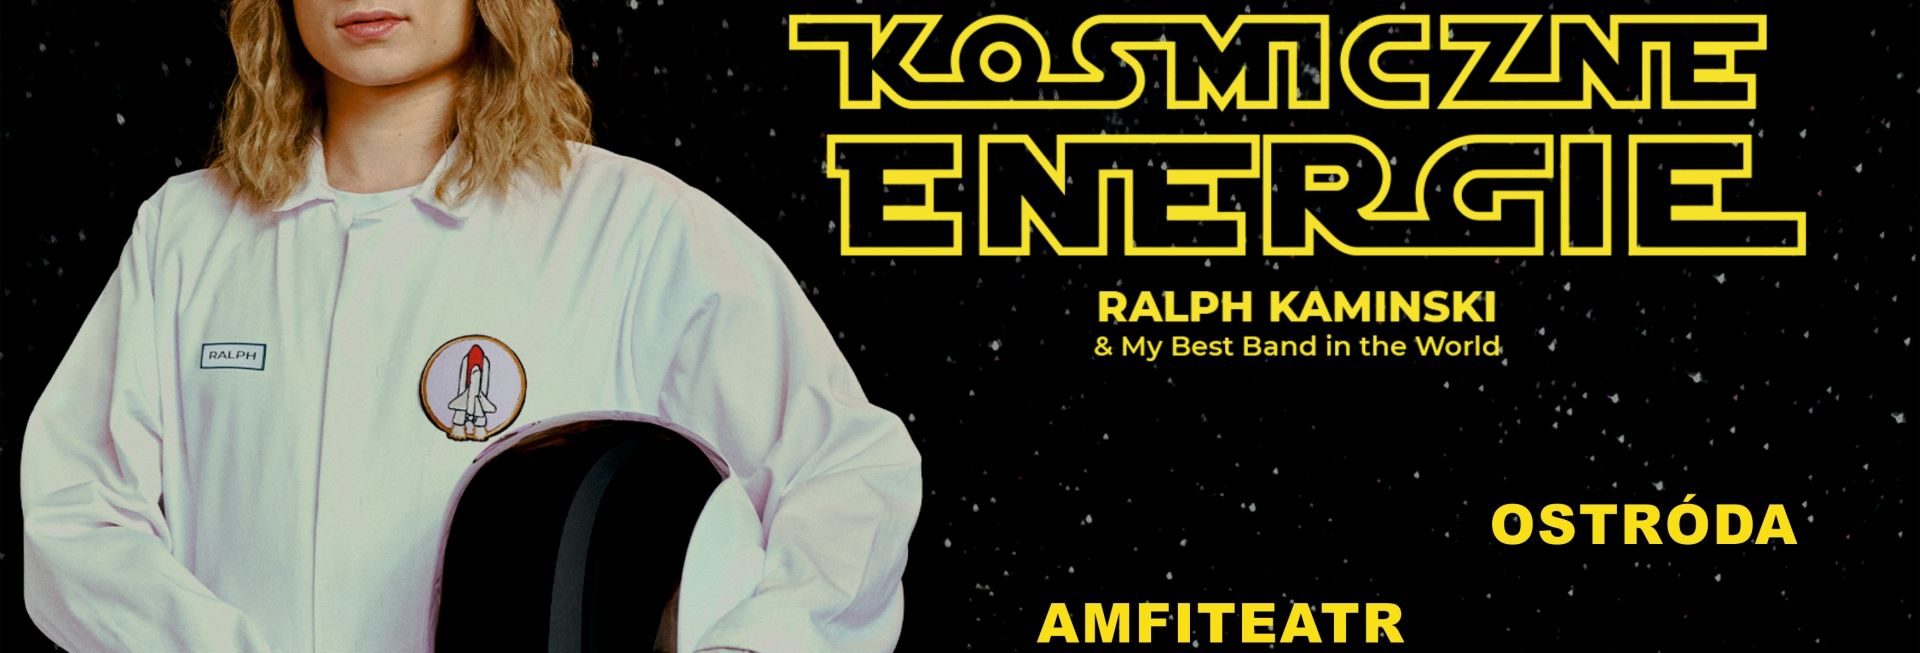 Plakat graficzny zapraszający do Ostródy na koncert Ralph Kaminski - "Kosmiczne Energie" Ostróda 2021. Na plakacie zdjęcie artysty w stroju kosmonauty.